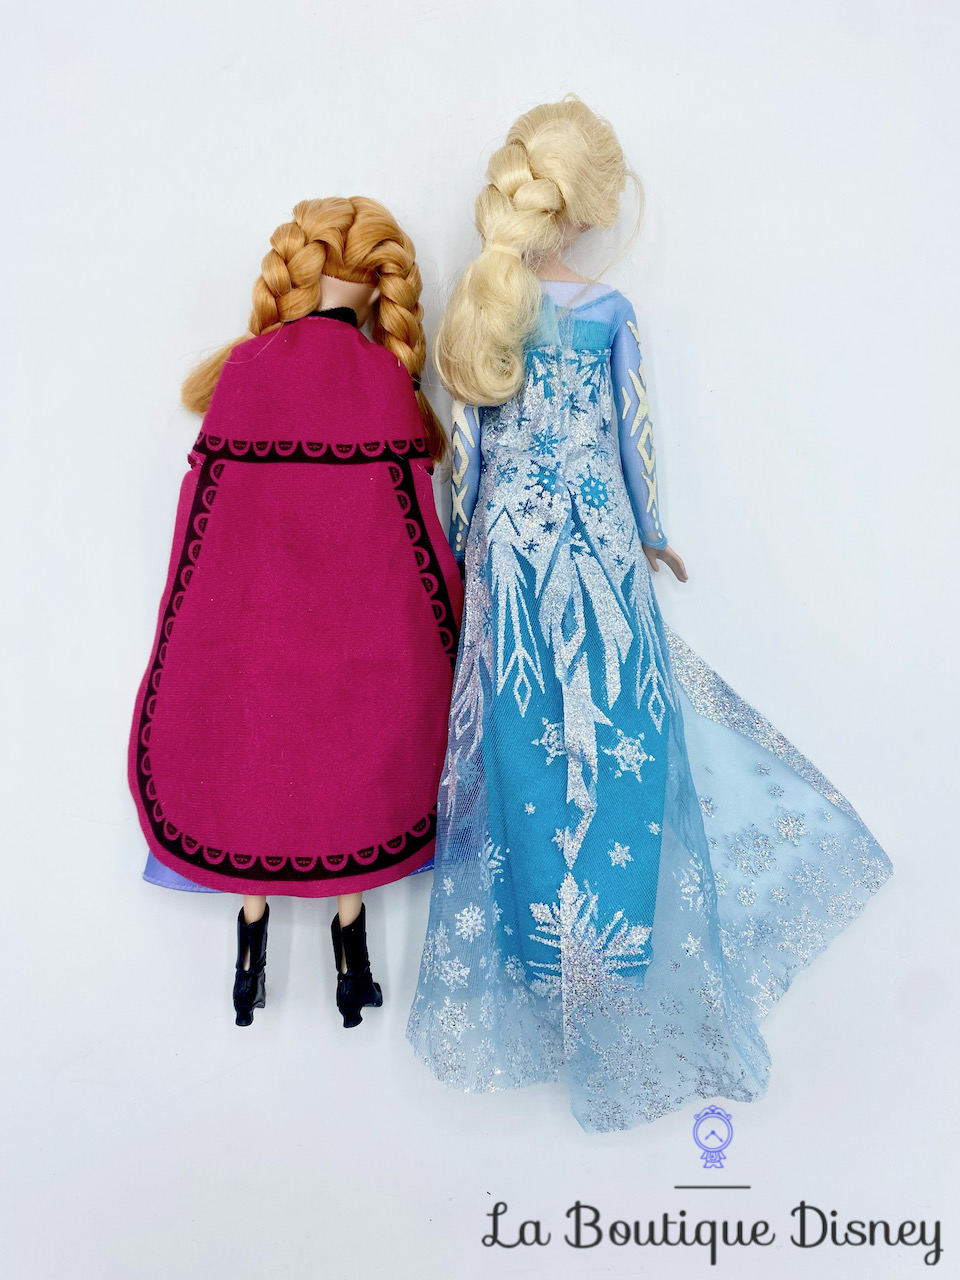 Poupées Anna Elsa La reine des neiges Disney Mattel Signature